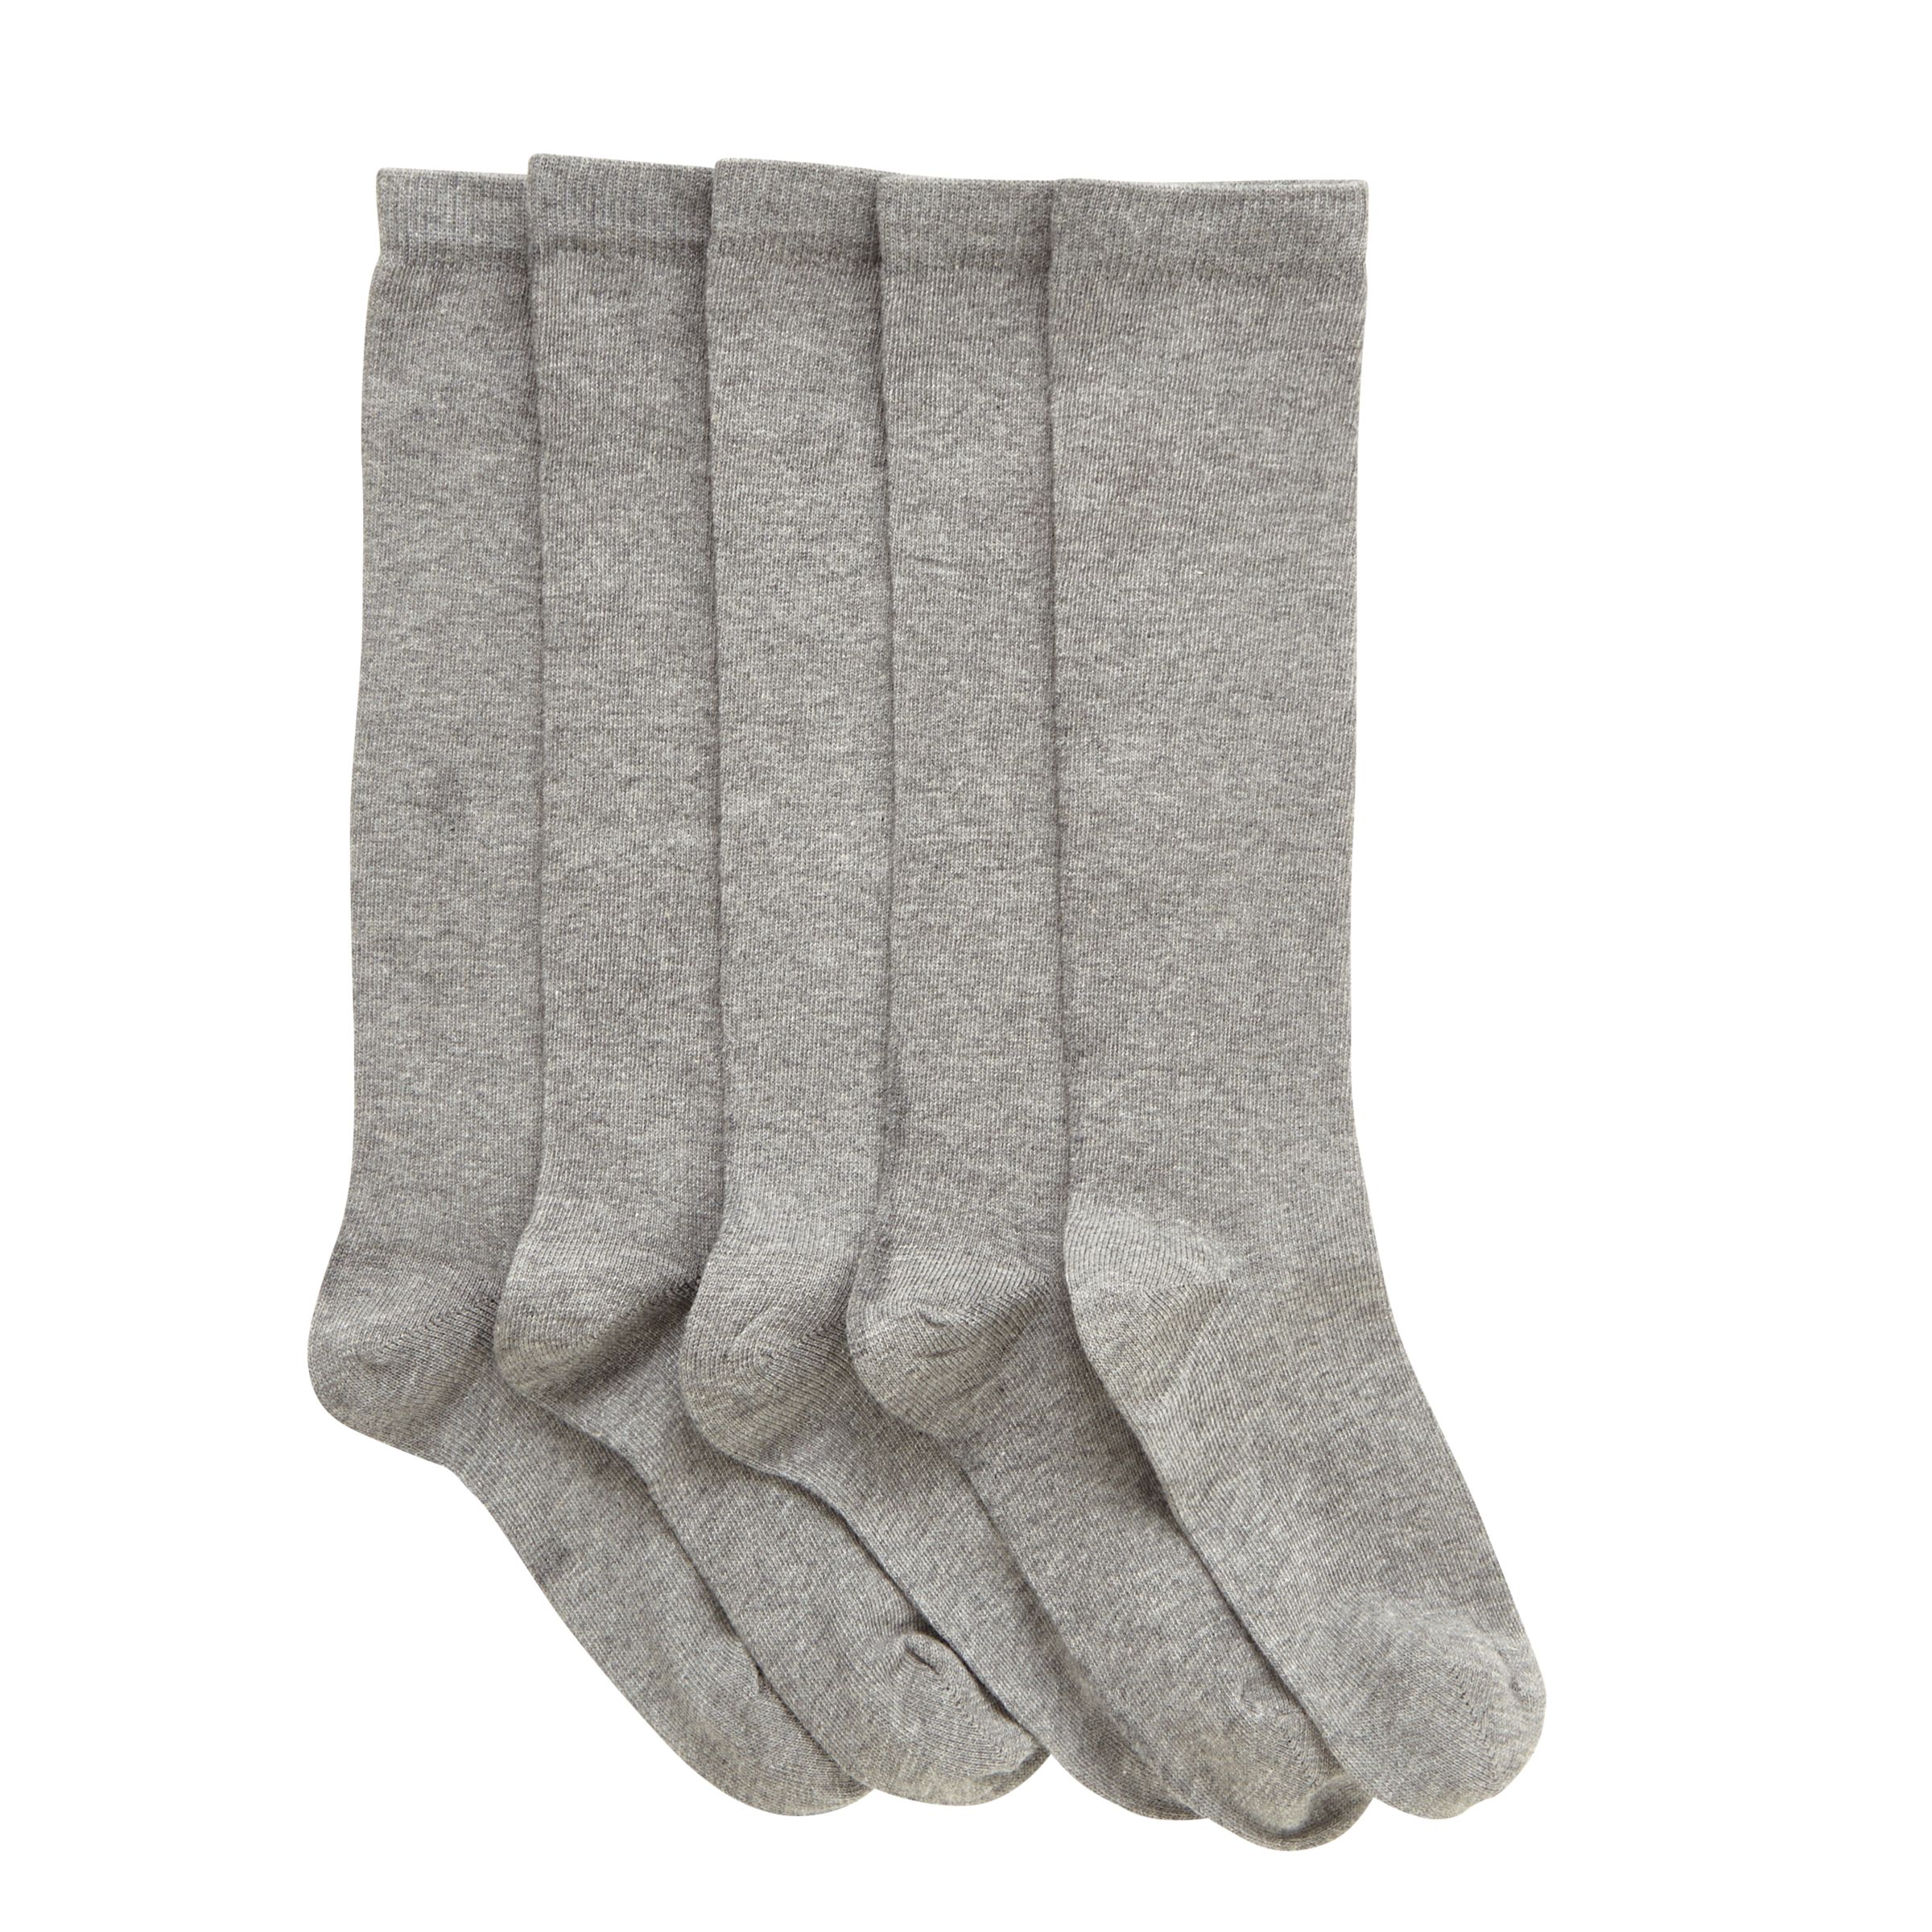 John Lewis Kids' Knee High Socks, Pack of 5, Grey